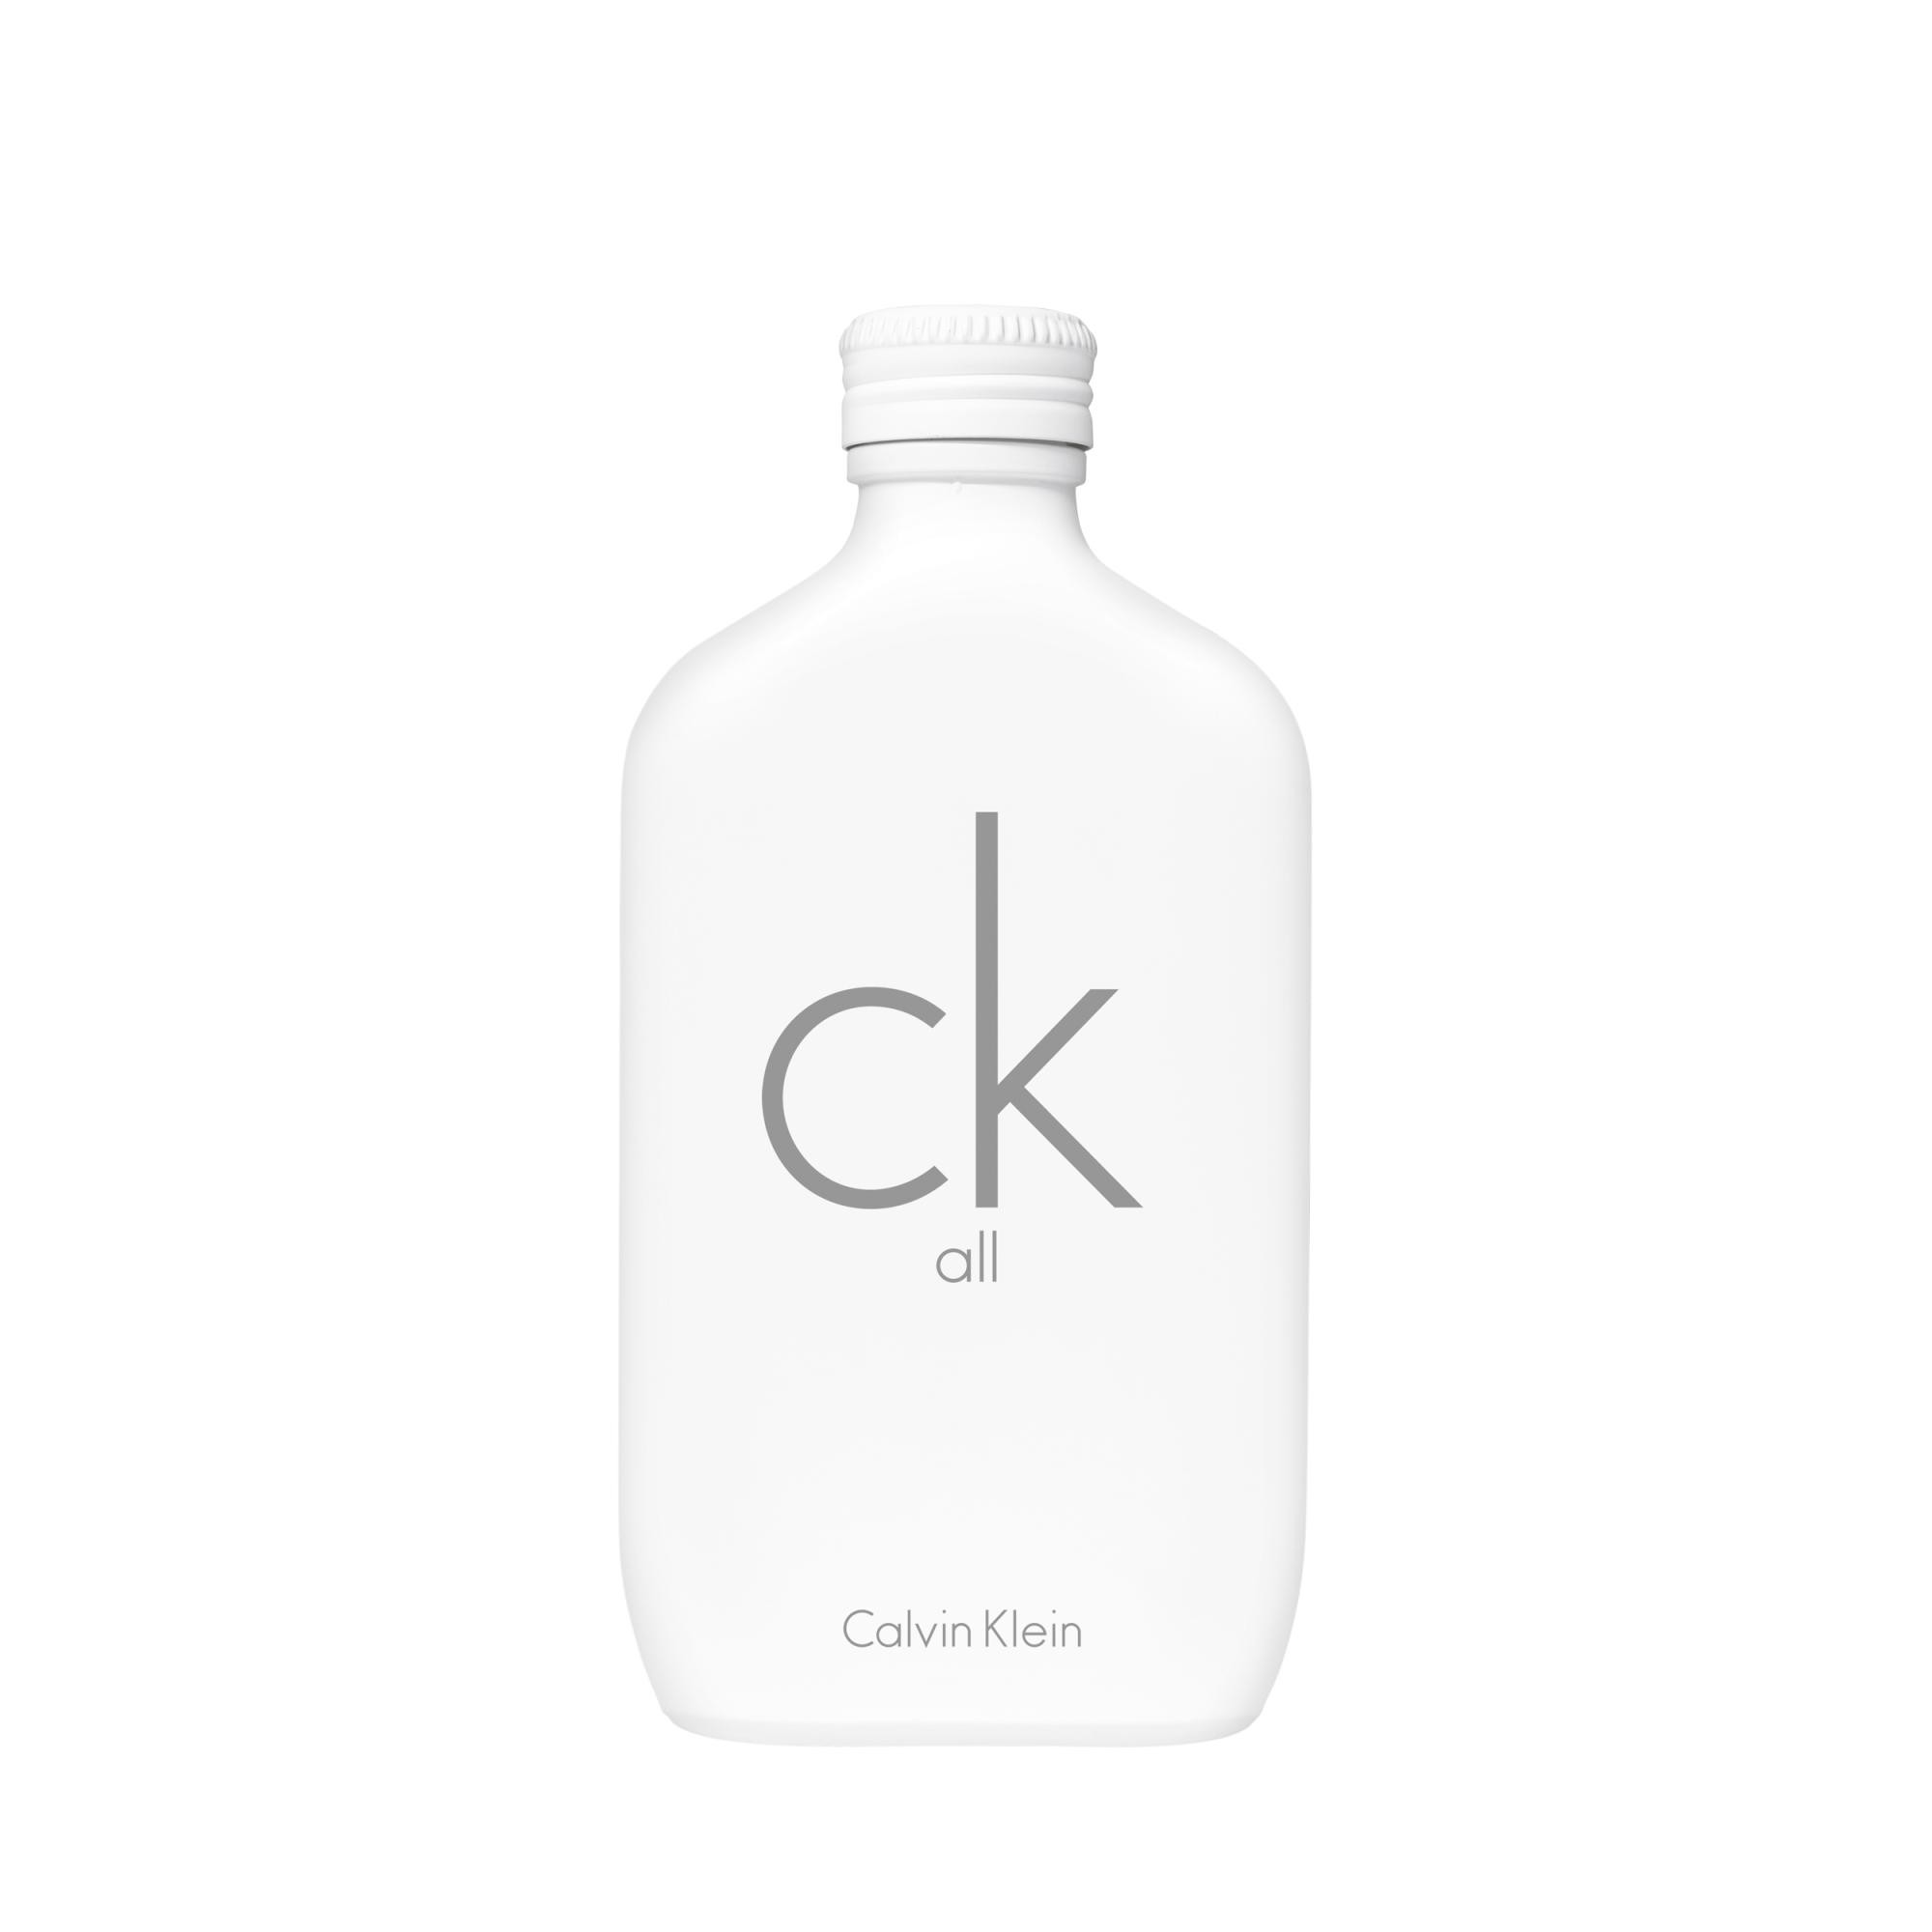 Image of Fragranza unisex Calvin Klein Ck All Edt 200 ml Eau De Toilette